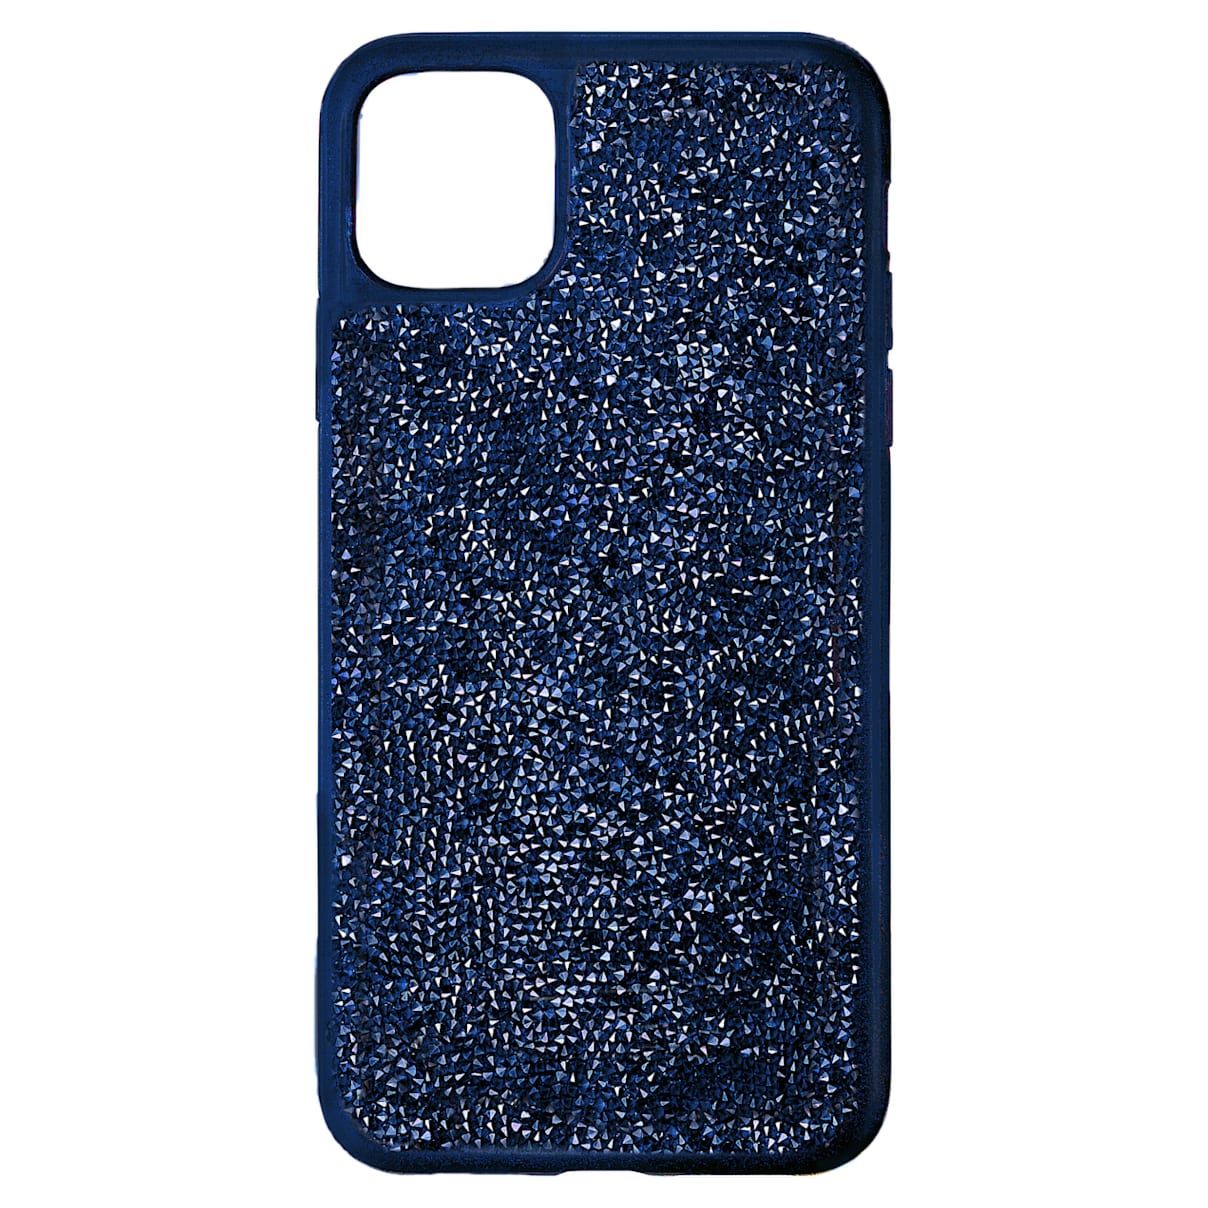 Custodia per smartphone con bordi protettivi Glam Rock, iPhone® 11 Pro, blu